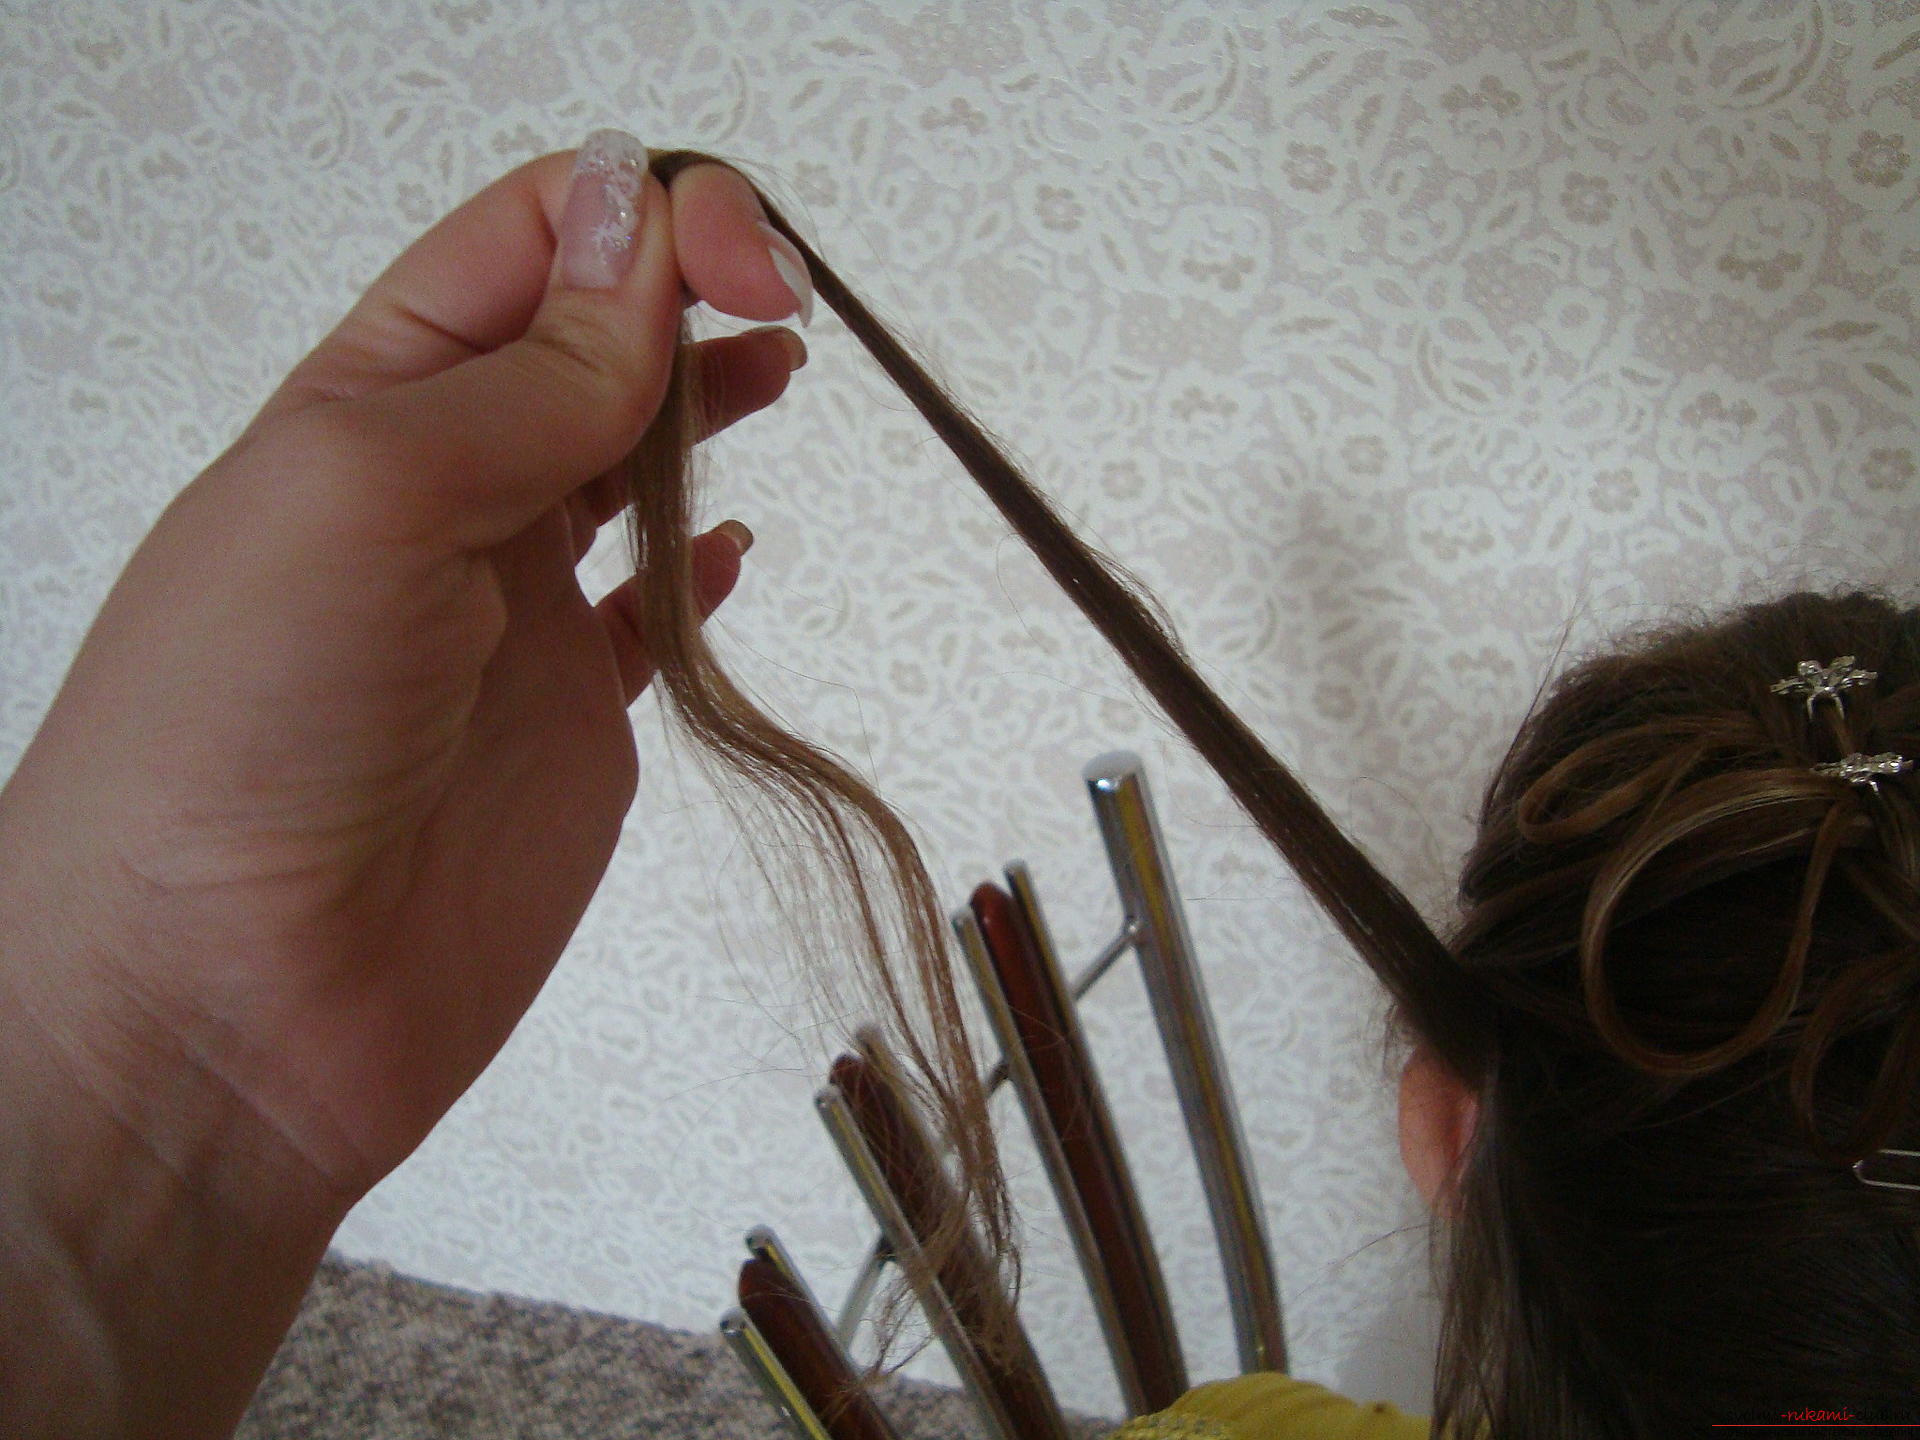 Красивые прически на длинных волосах легко создаются своими руками. Мастер-класс с поэтапными фото прически научит вас красиво укладывать волосы.. Фото №3